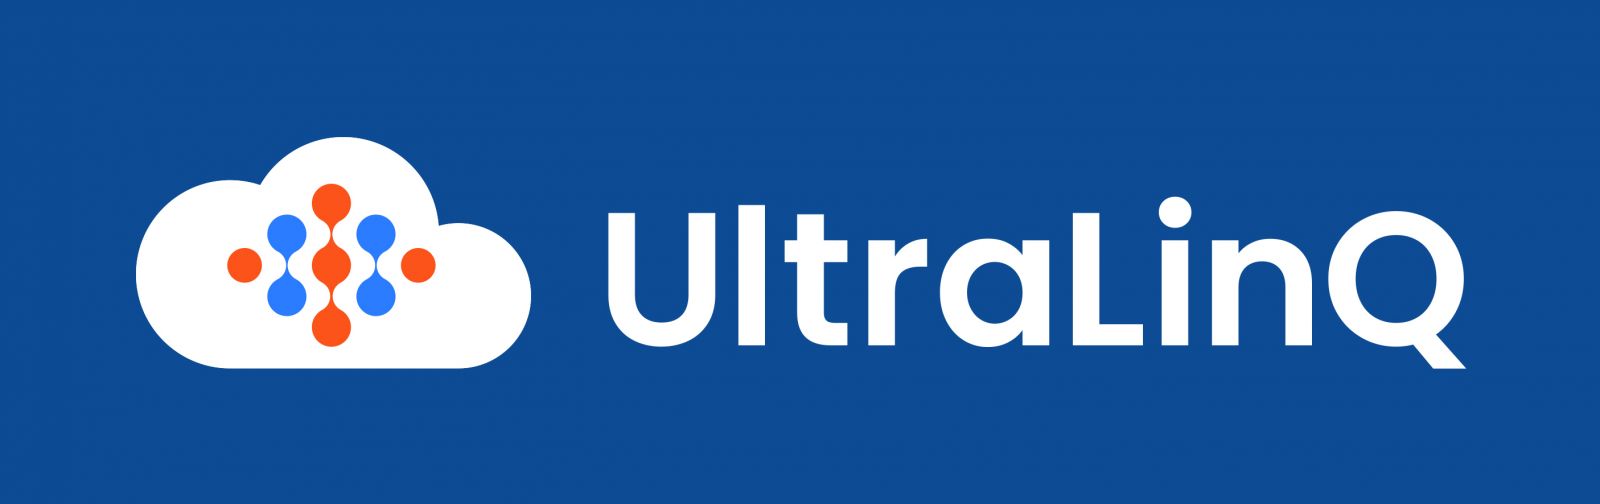 UltraLinQ Healthcare 